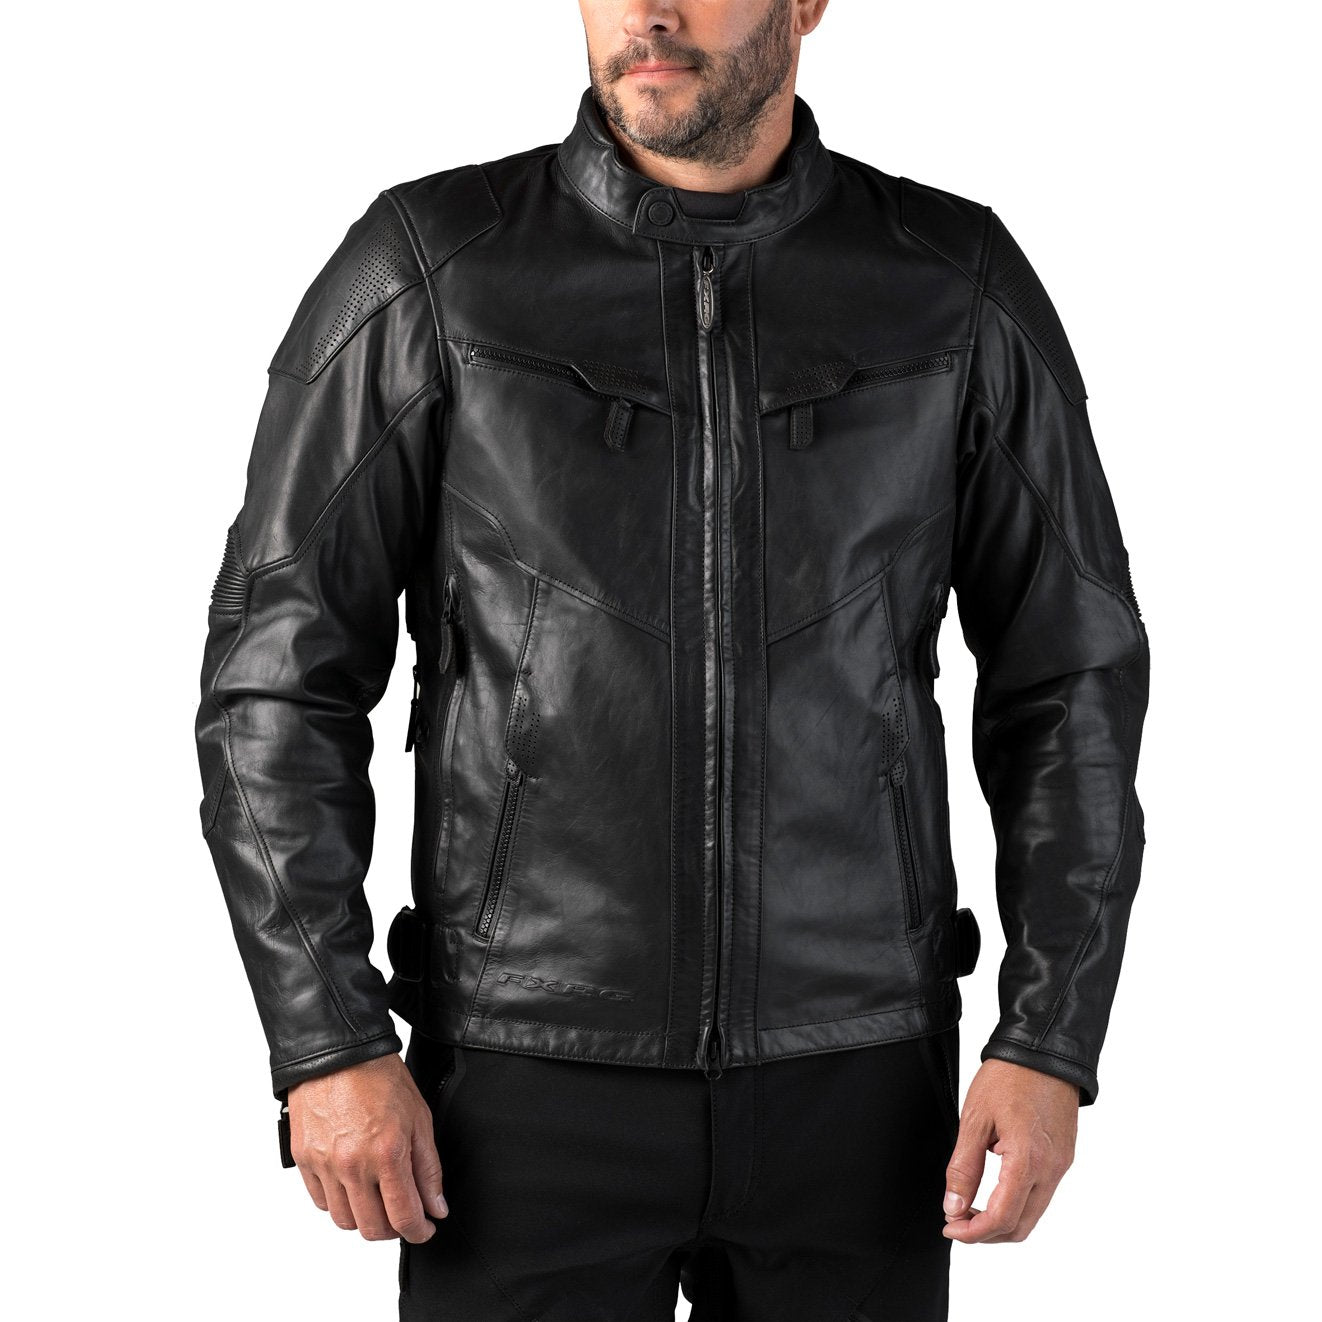 Harley-Davidson® Men's FXRG Leather Jacket With Pocket System 98040-12VM